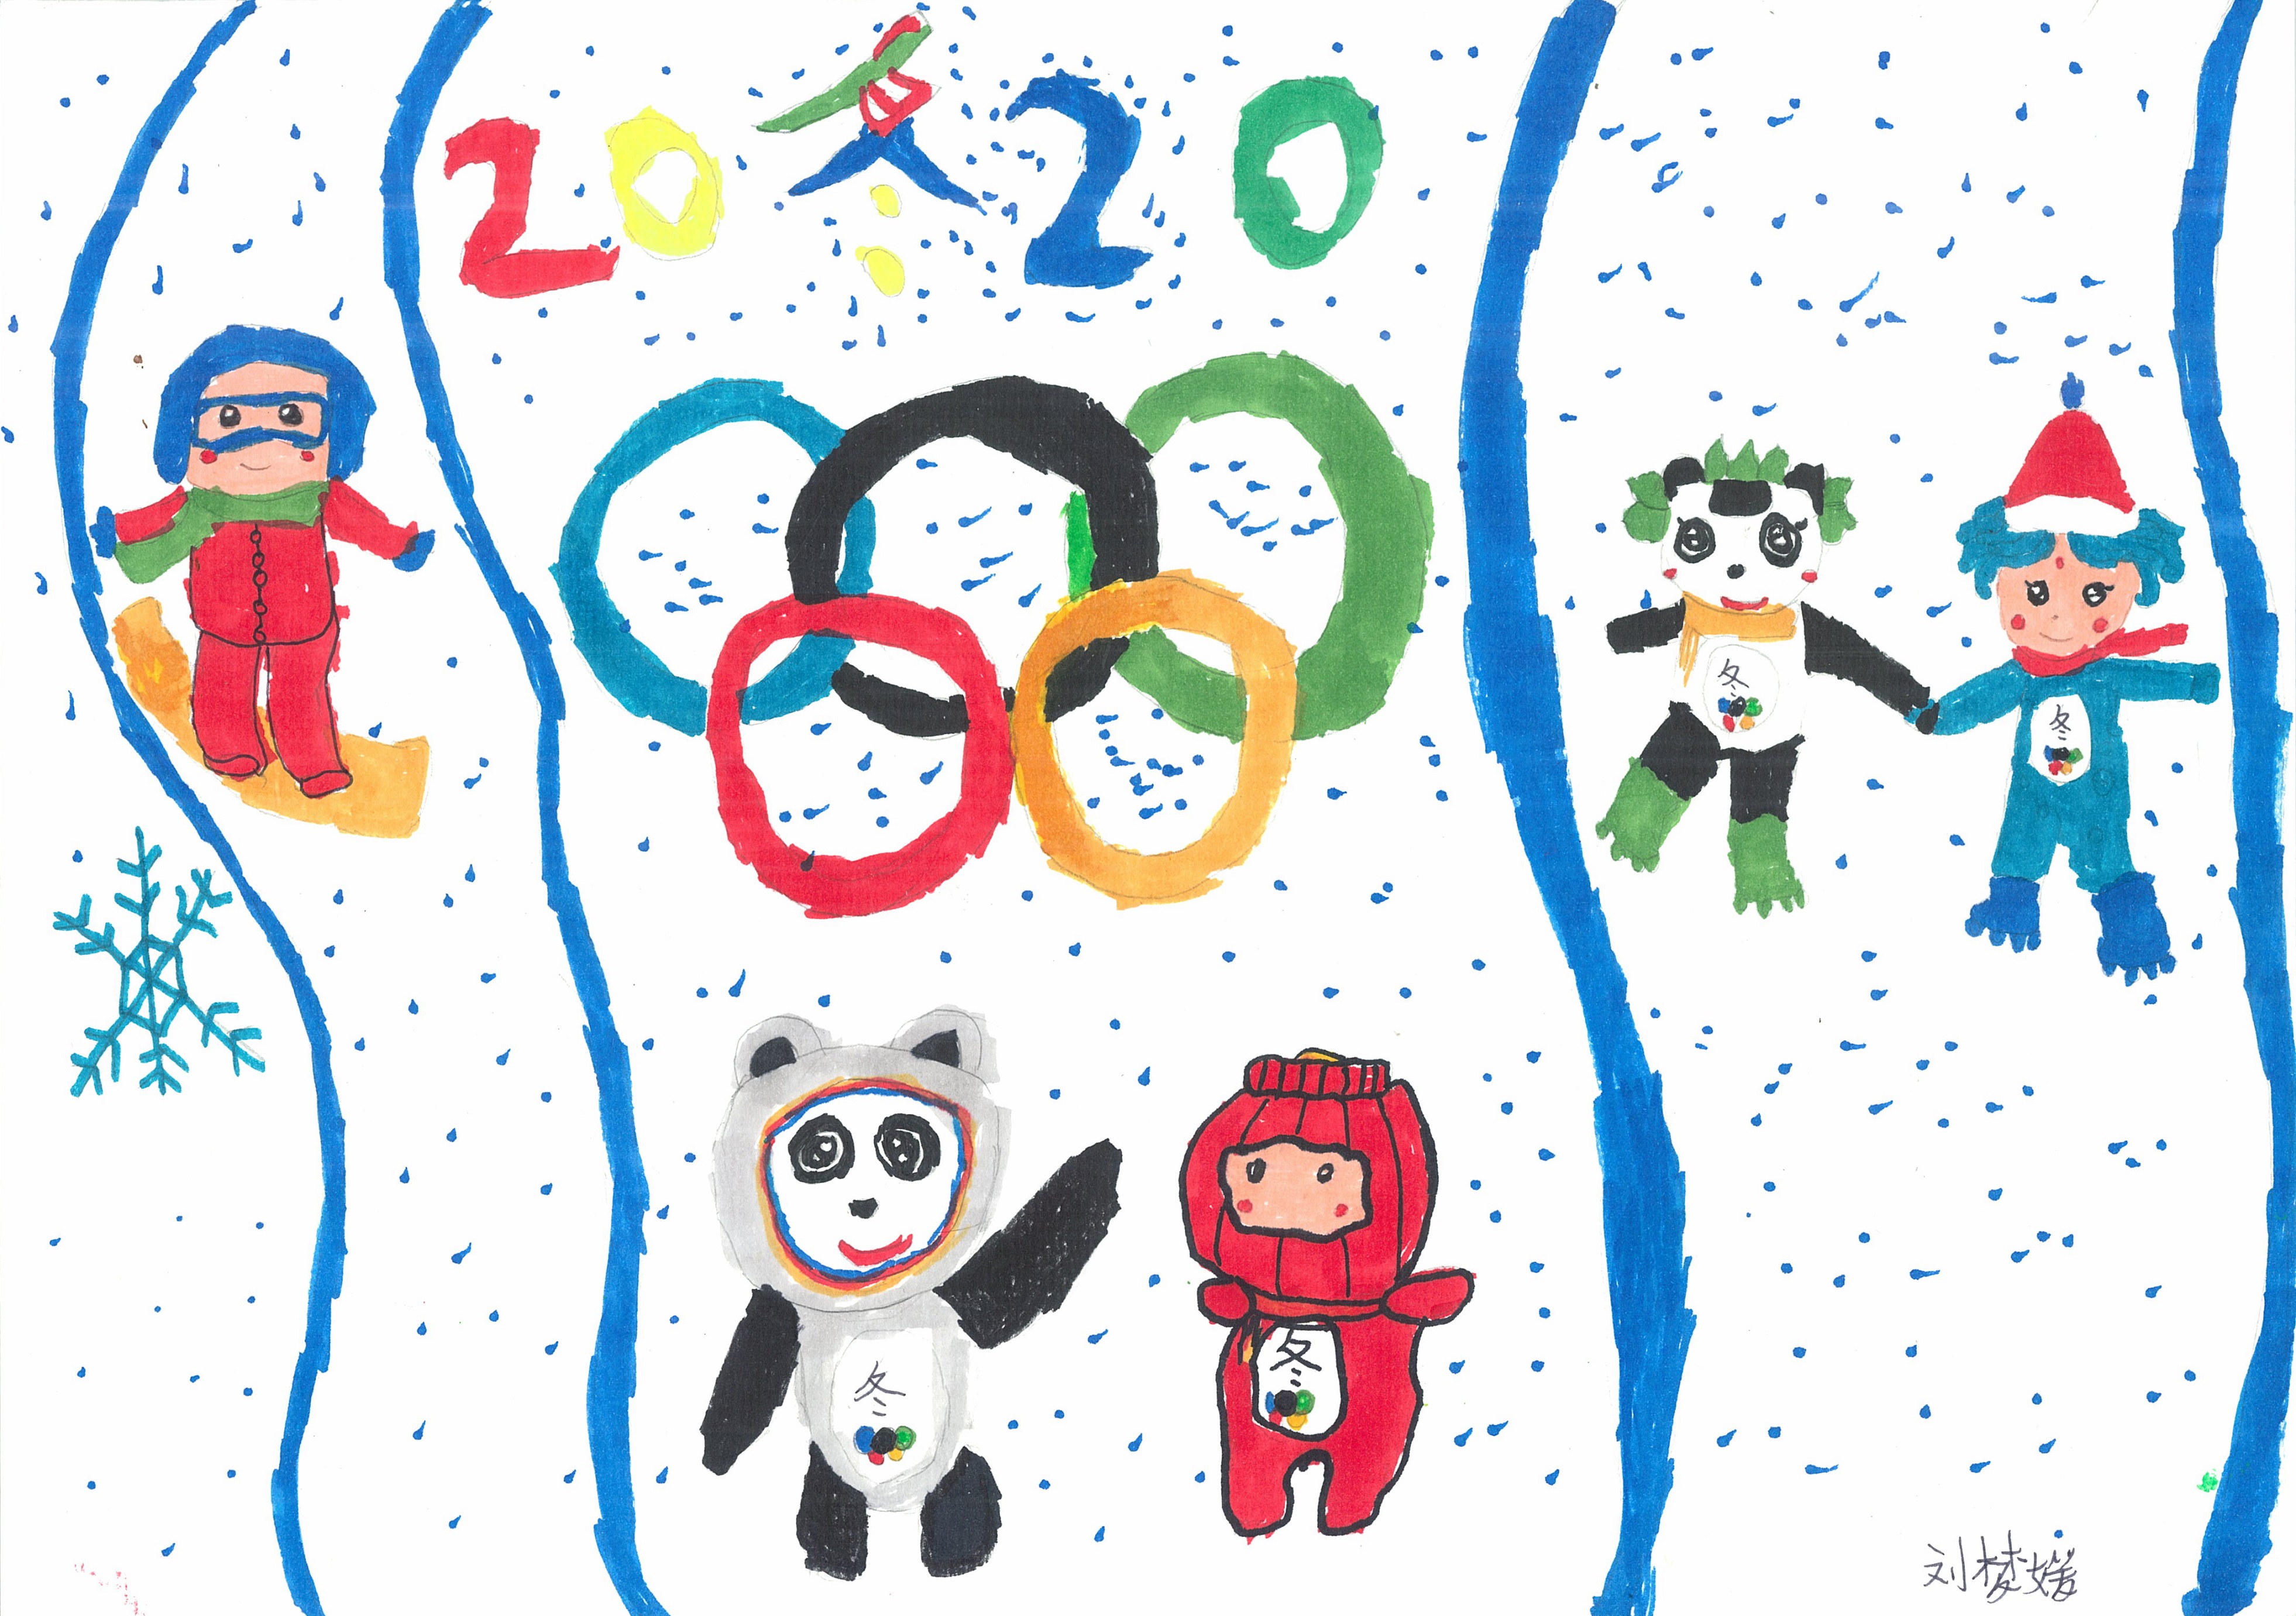 《我心中的冬奥荣耀时刻》Glory Moments Of The Winter Olympics In My Heart +刘梦媛 Liu Mengyuan